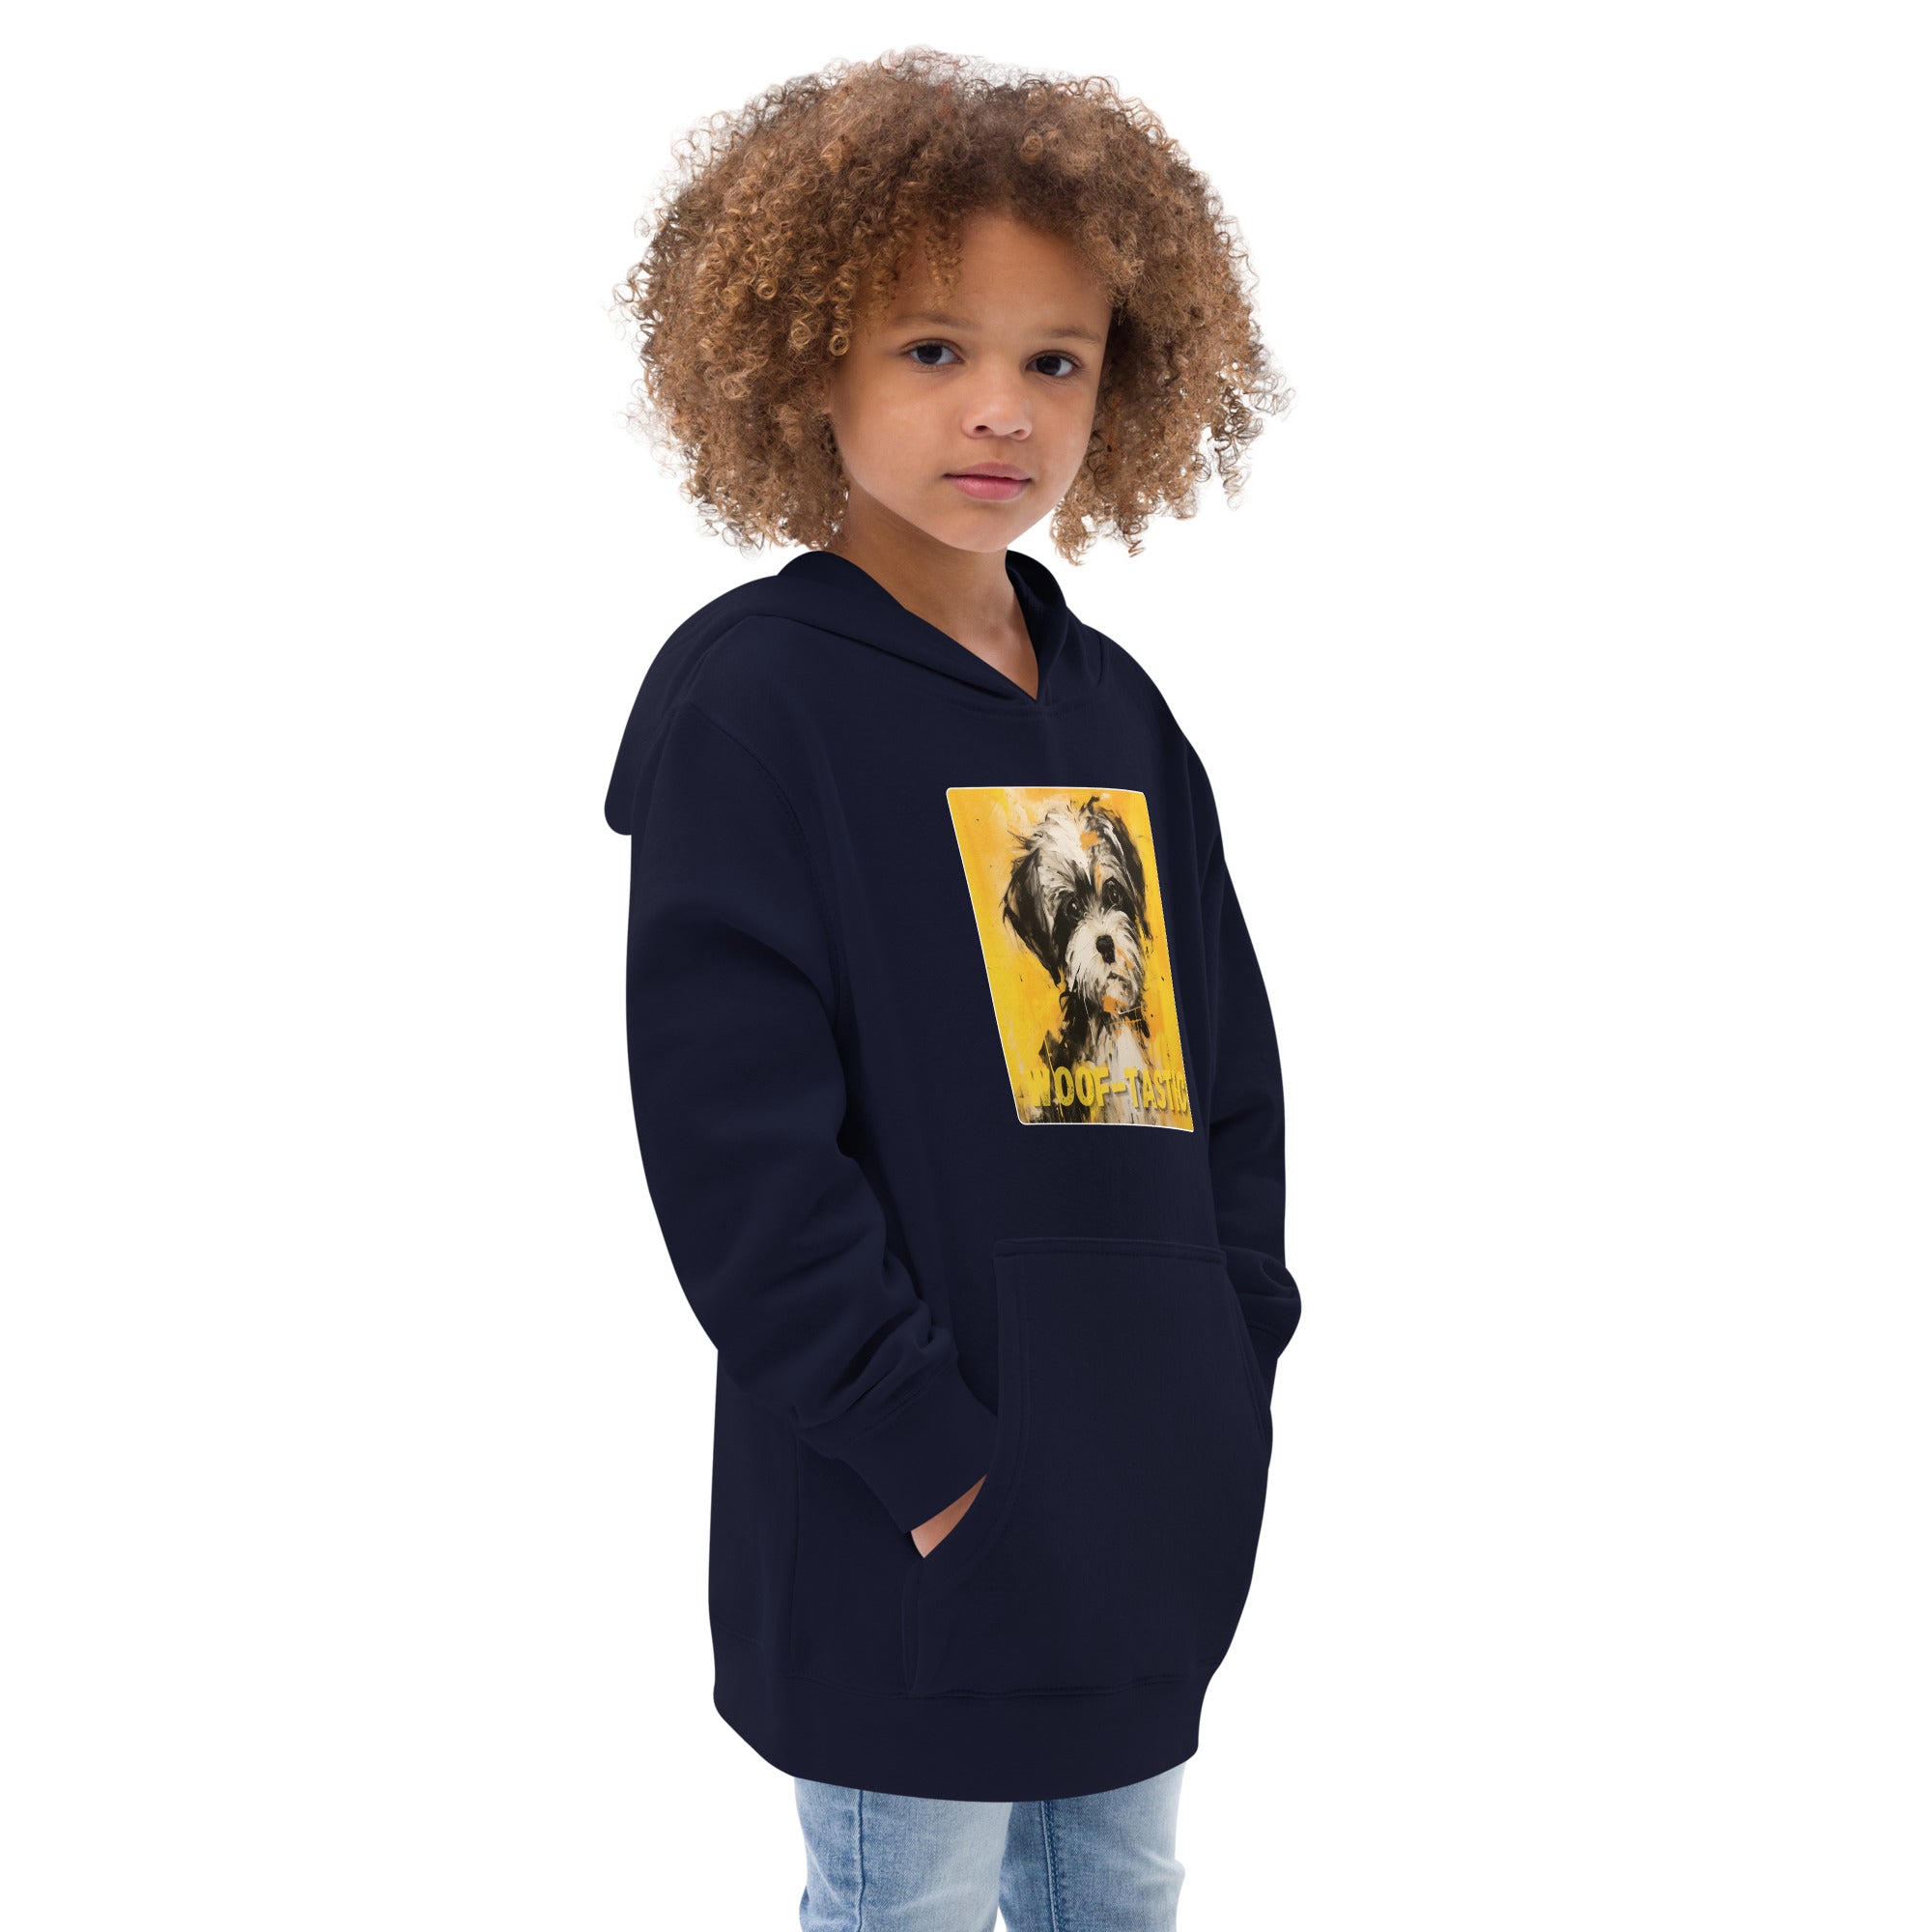 Kids fleece hoodie Woof-tastic Shih Tzu